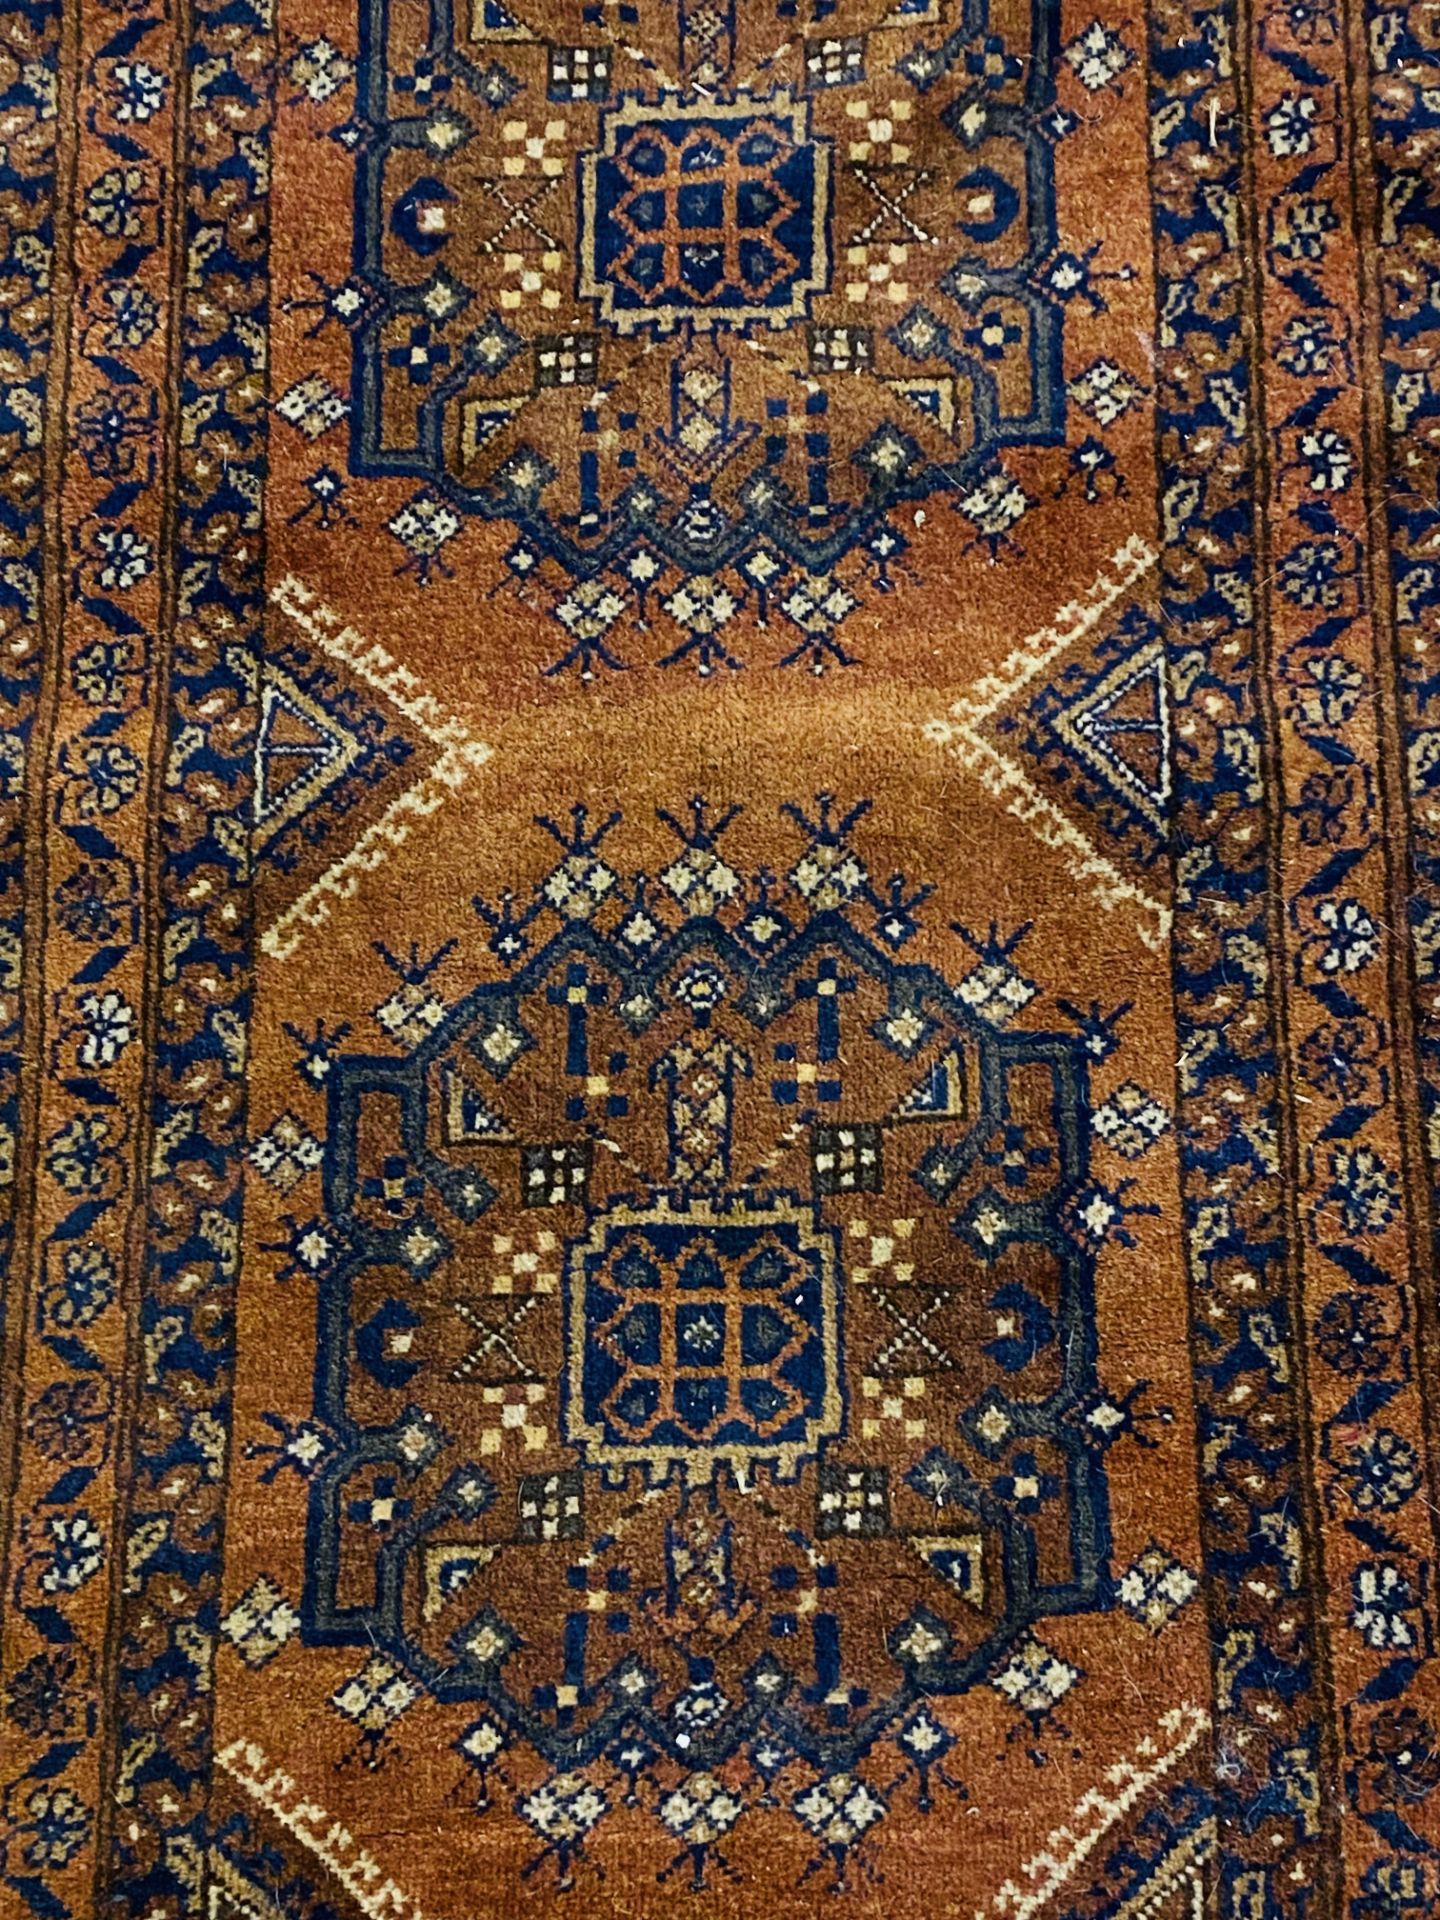 Brown ground Afghan rug - Image 2 of 3